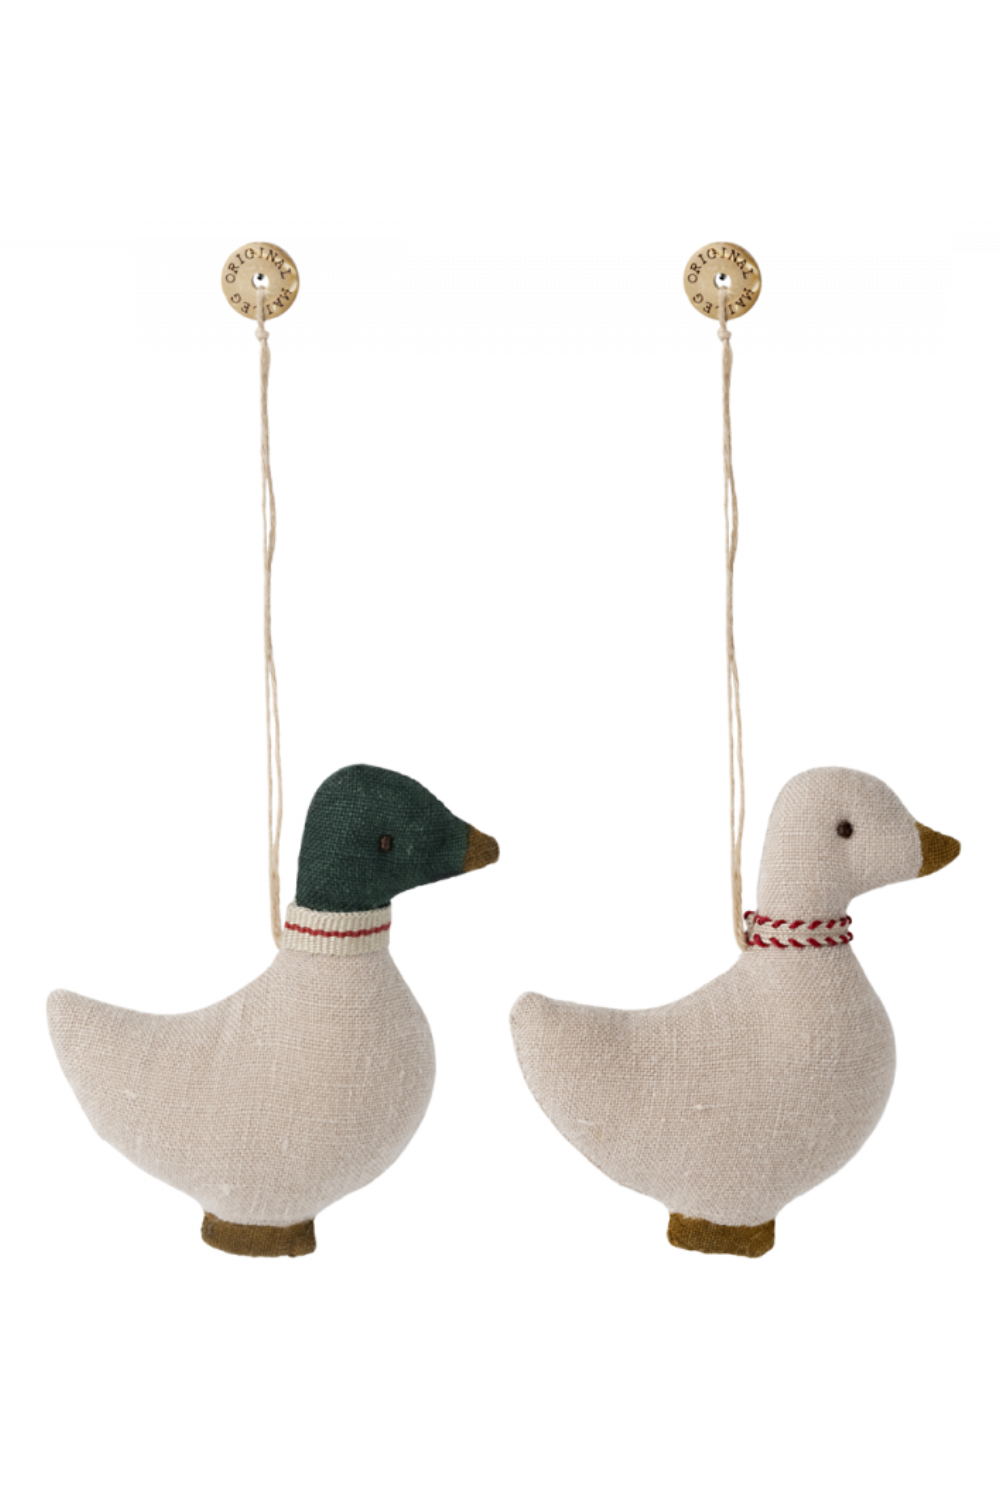 Duck Ornament, Bundle